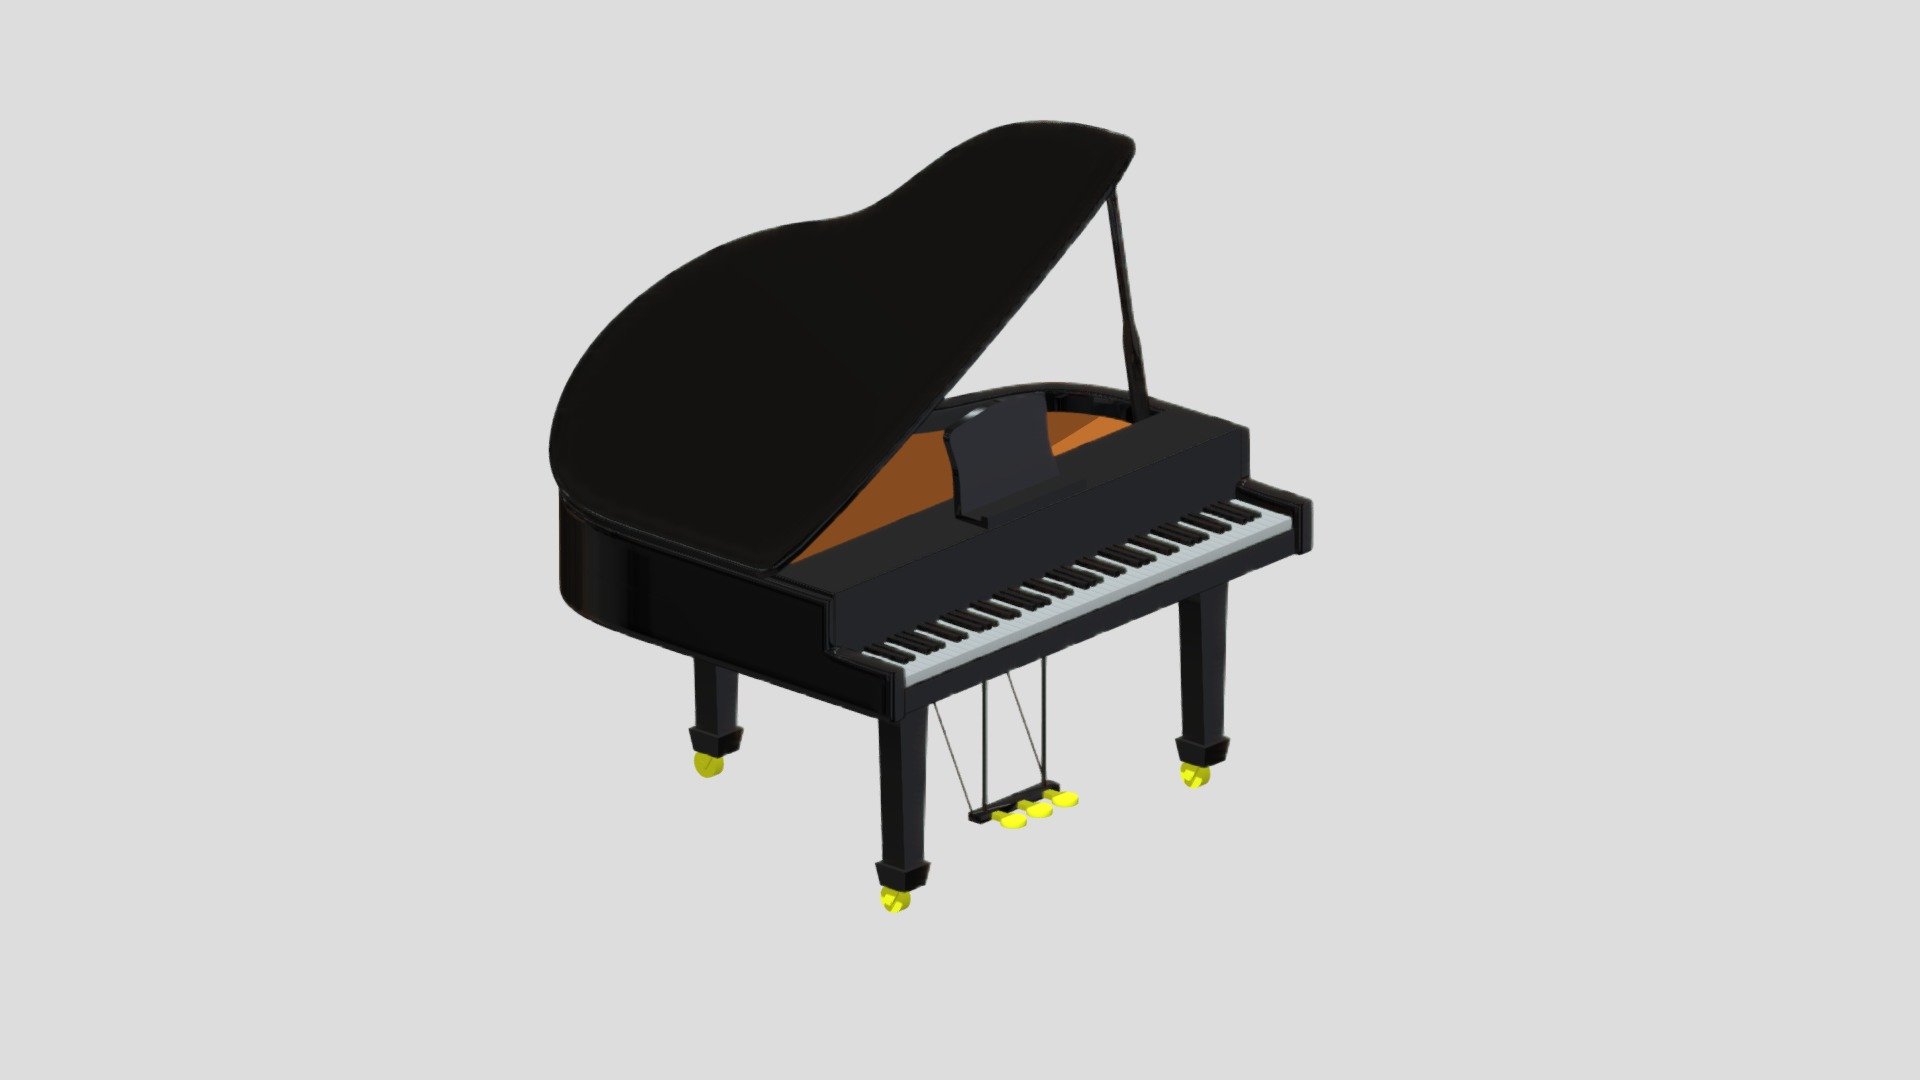 cartoon piano